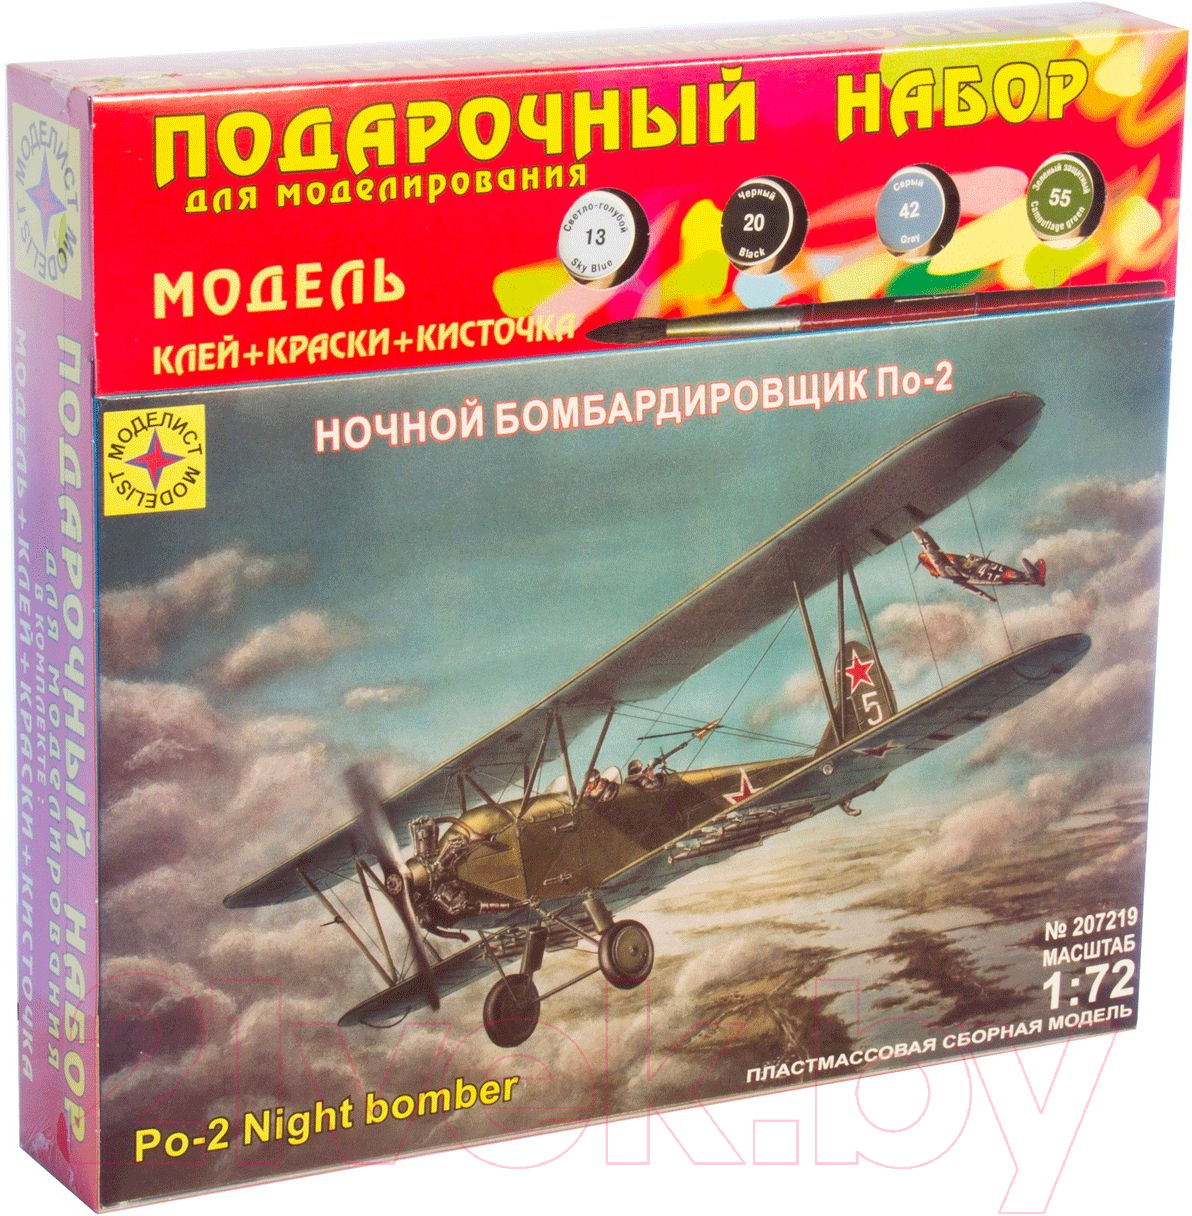 Сборная модель Моделист Ночной бомбардировщик По-2 1:72 / ПН207219